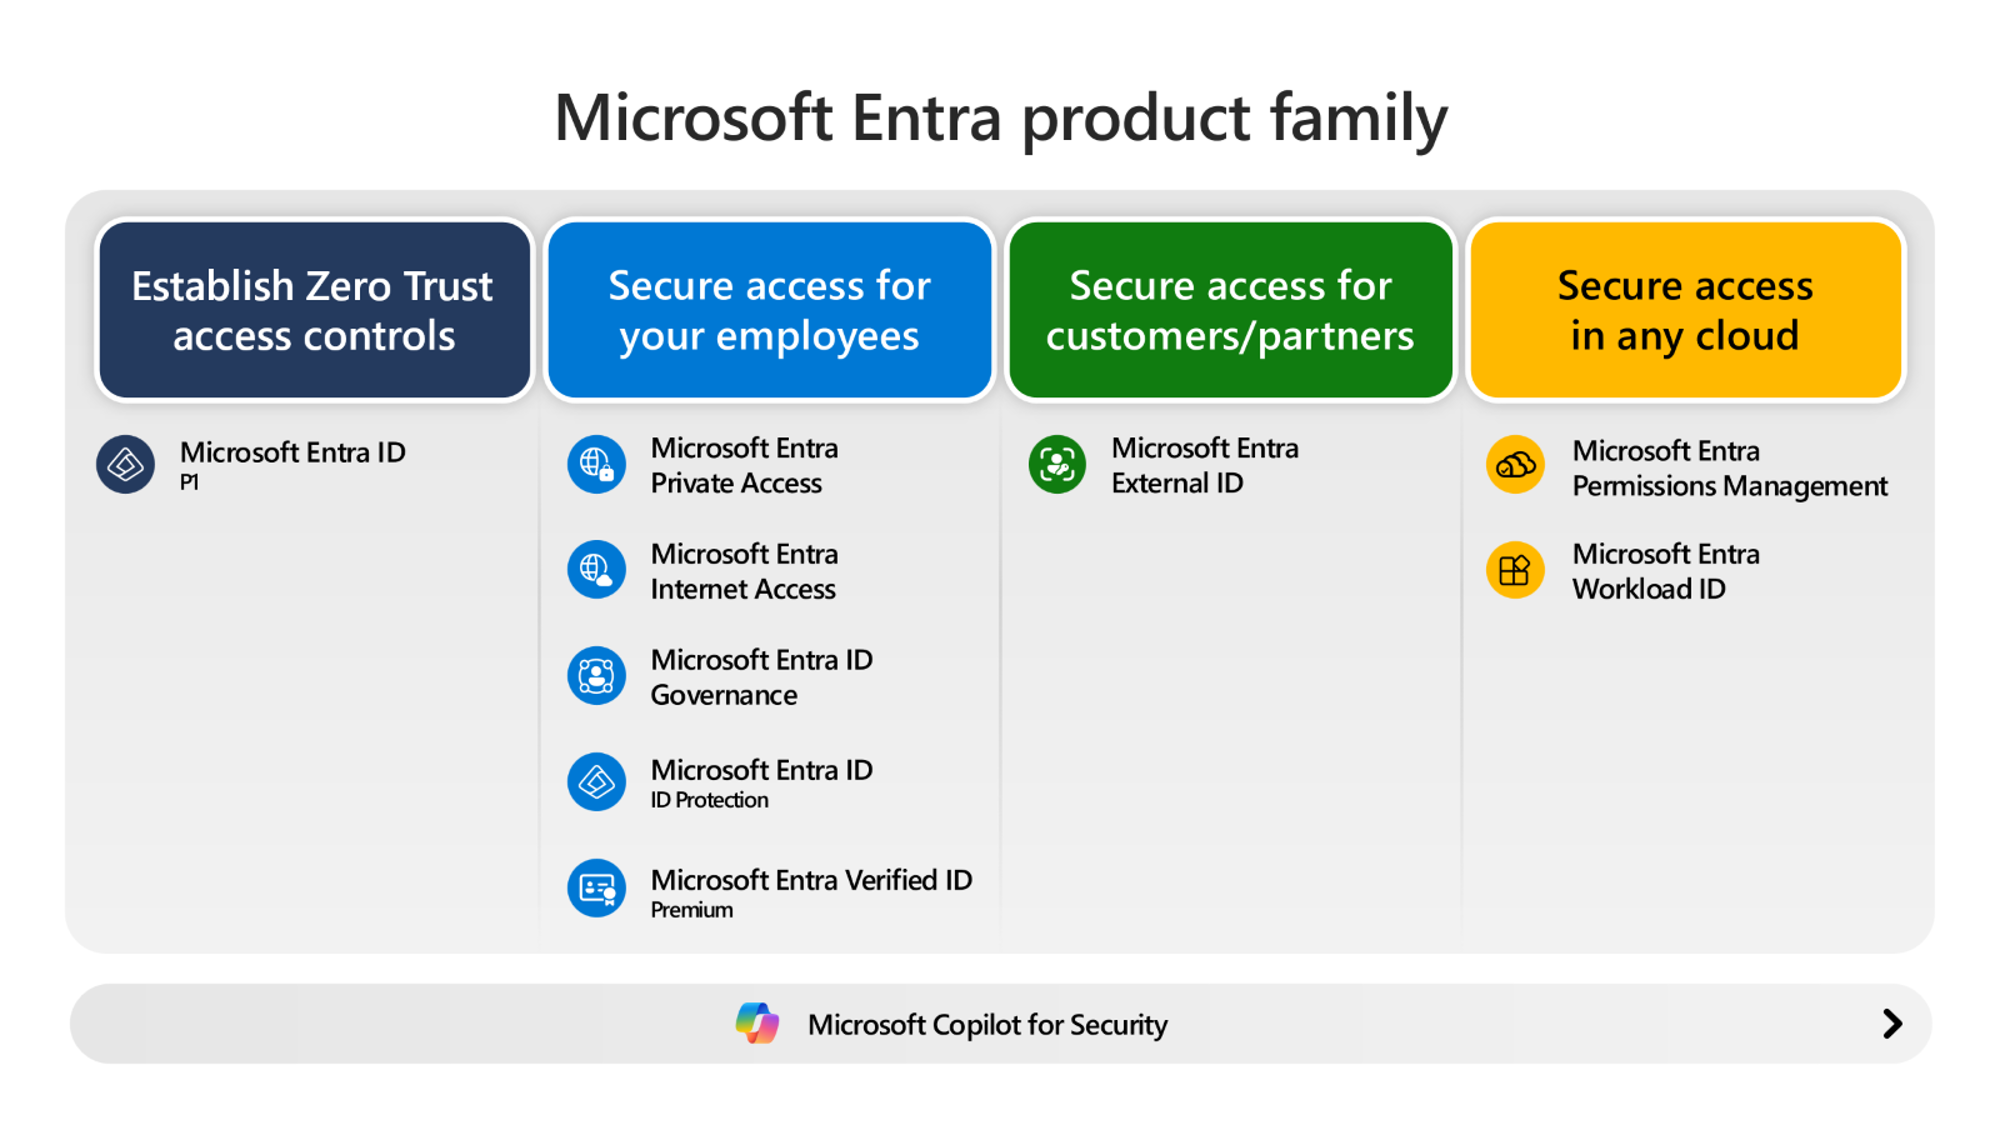 Diagramma dei prodotti Microsoft Entra in quattro fasi di maturità.